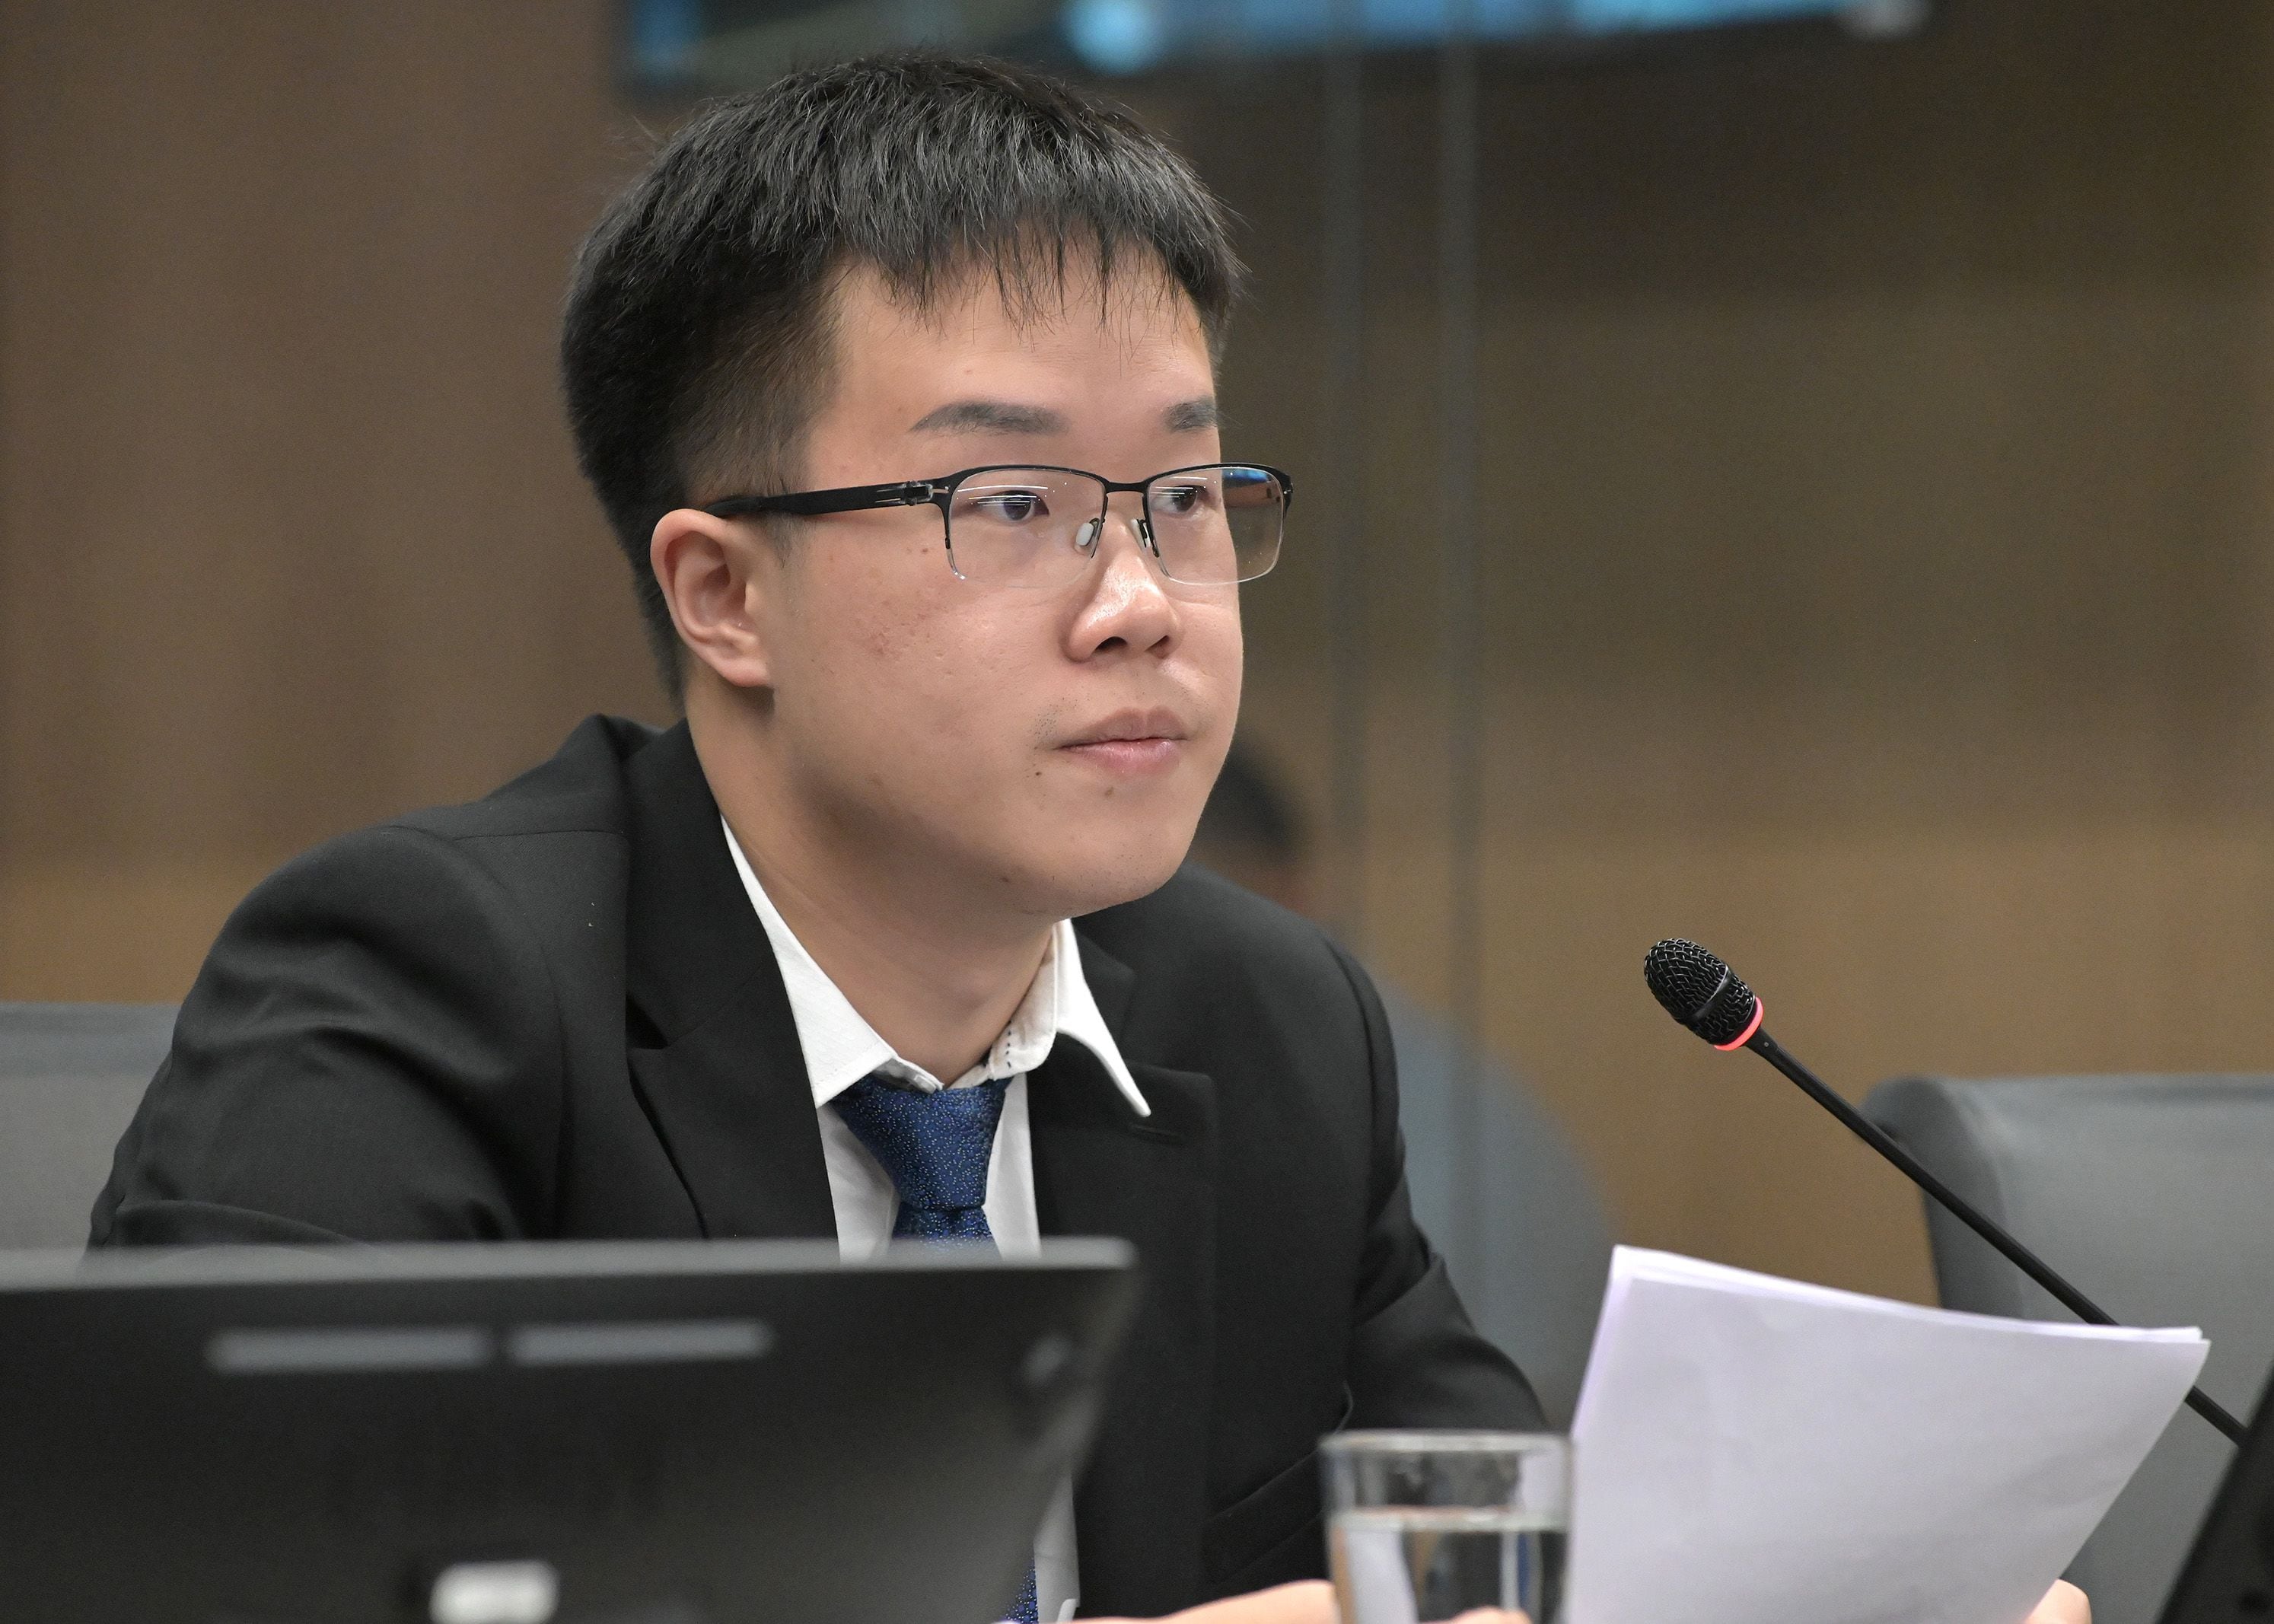 De Sheng Lin Hu, de 25 años, giró a las cuentas del PPSD un cheque de ¢150 millones. Adujo el dinero provenía de un regalo de los papás.